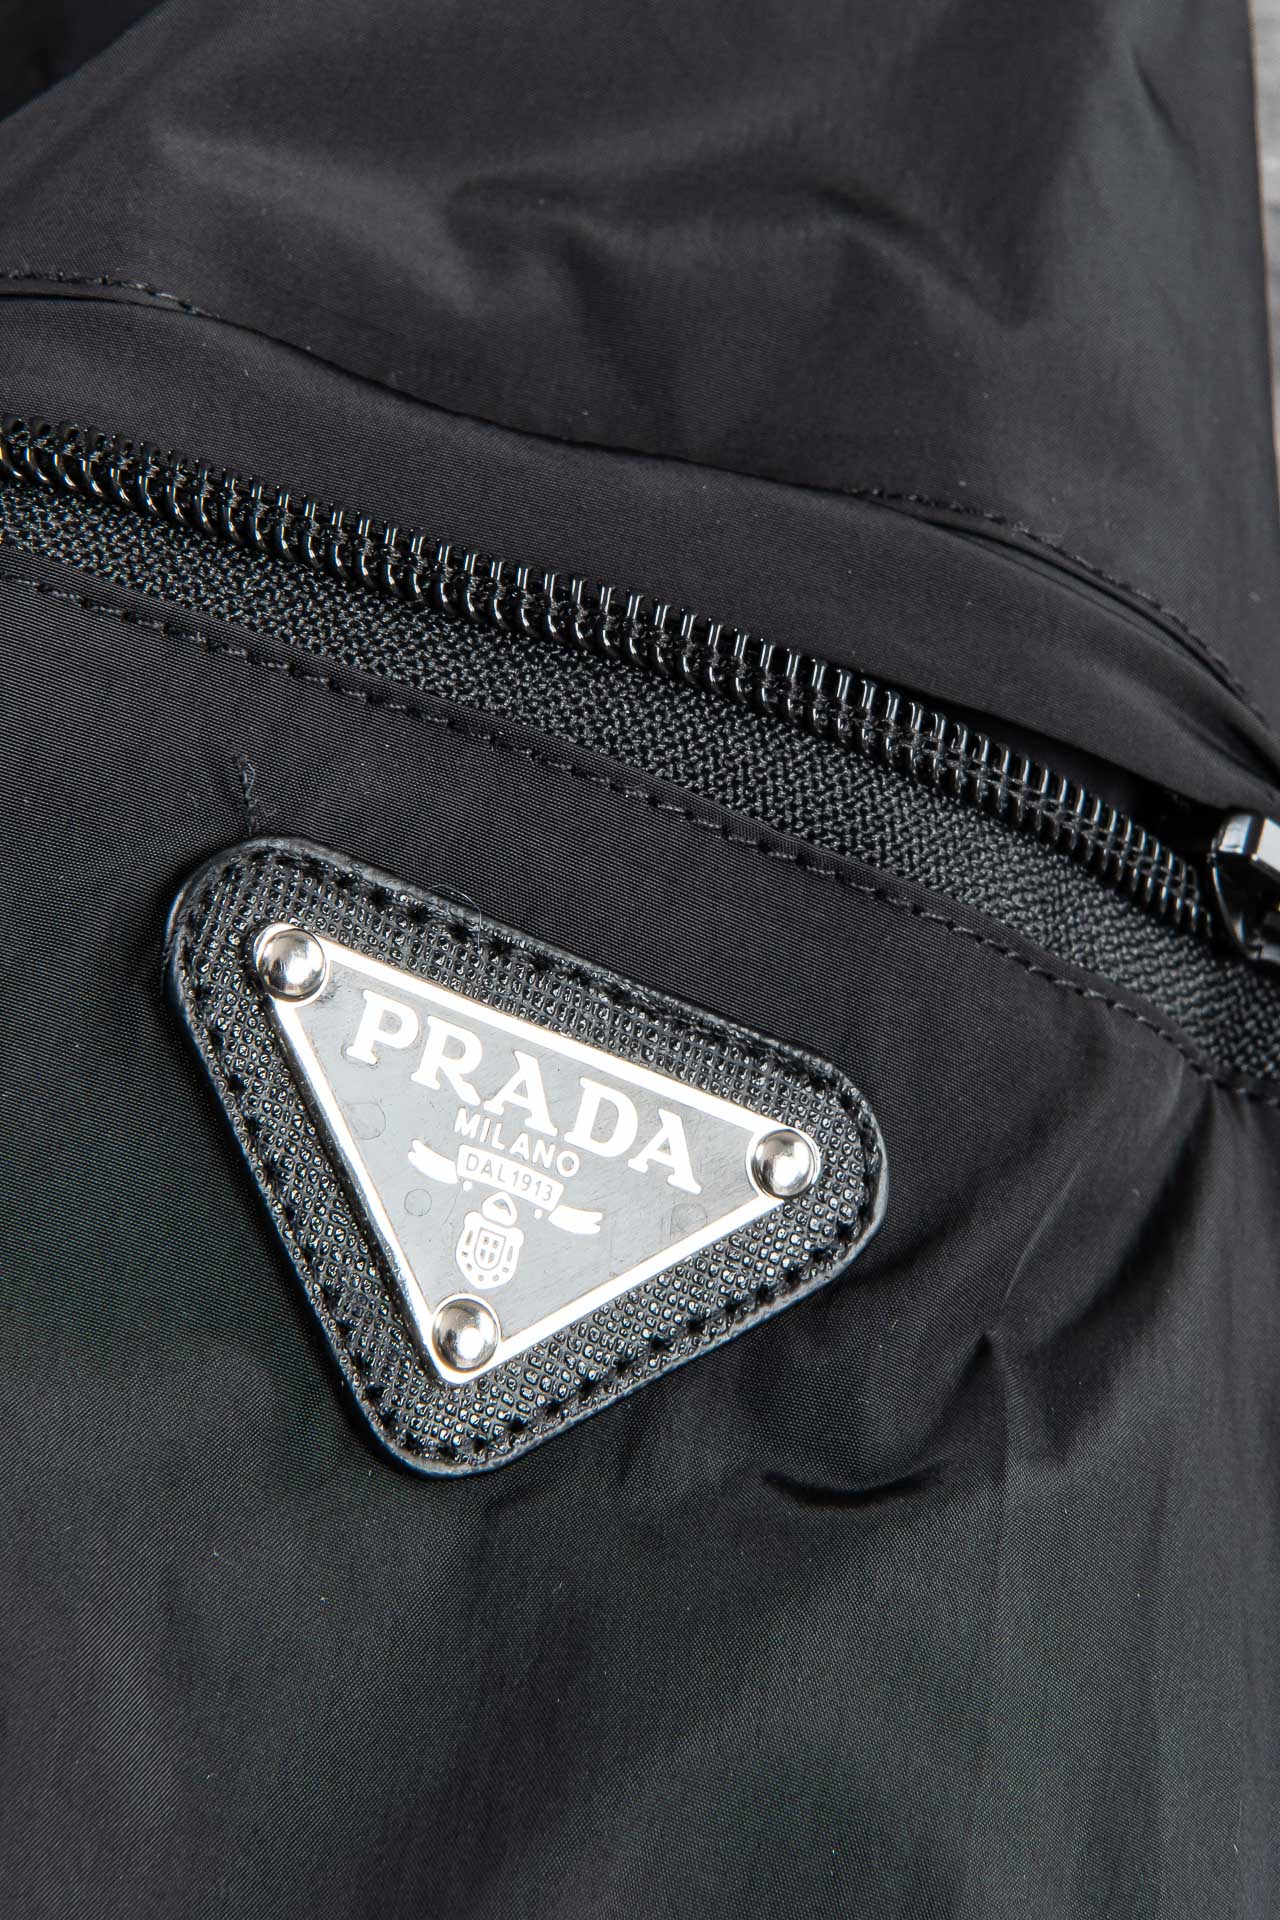 New#️Prada普拉达24SS春季新品简约大方双面穿夹克进口原版高品质聚酯纤维面料垂度和光泽绝对是提